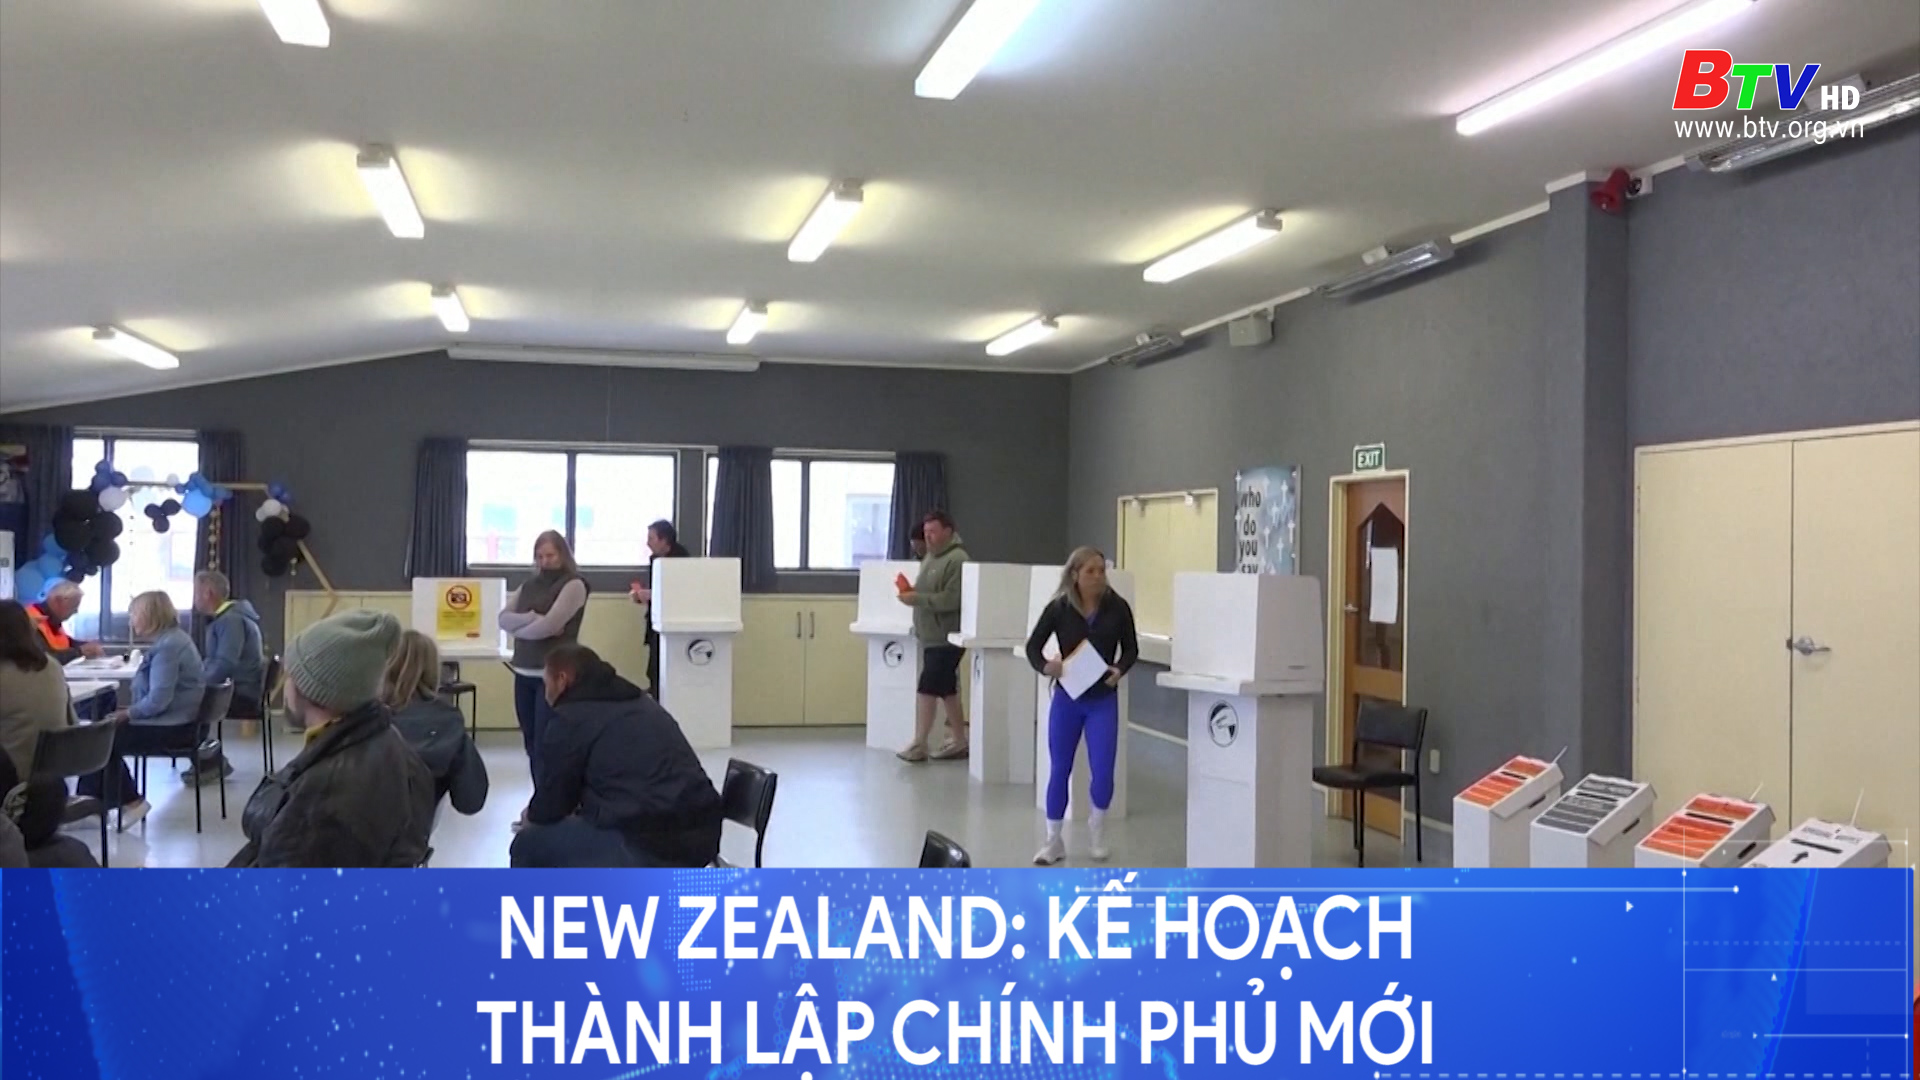 New Zealand: kế hoạch thành lập Chính phủ mới 